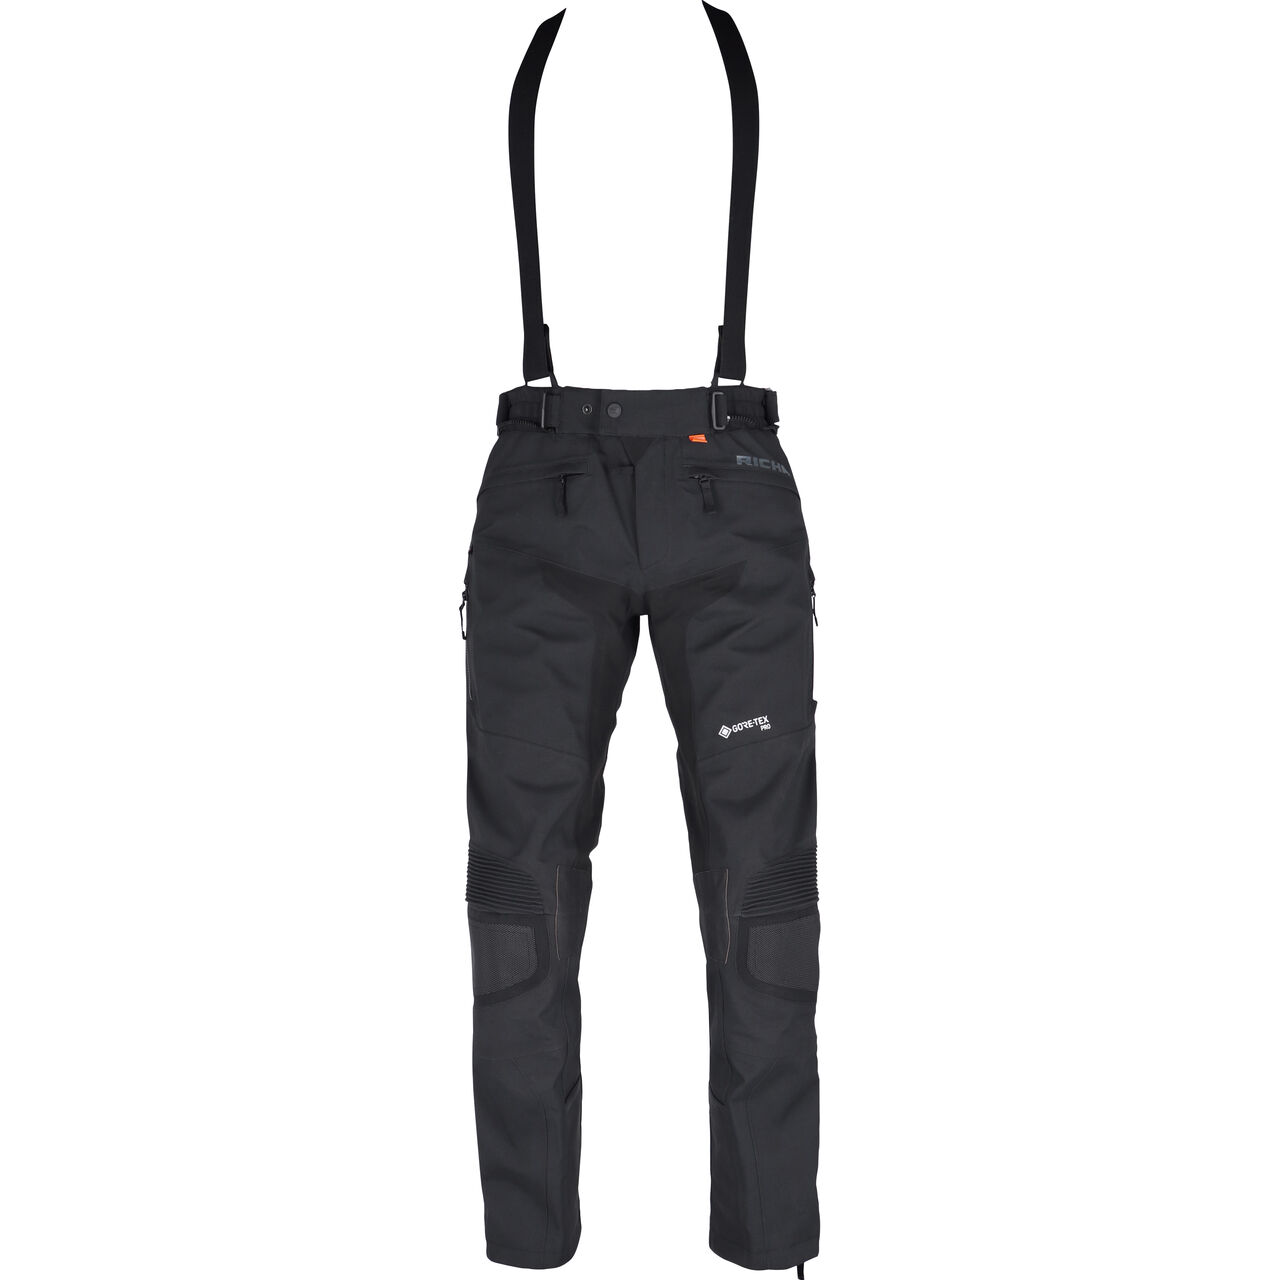 Armada GTX Pro textile pants black XL (tall)